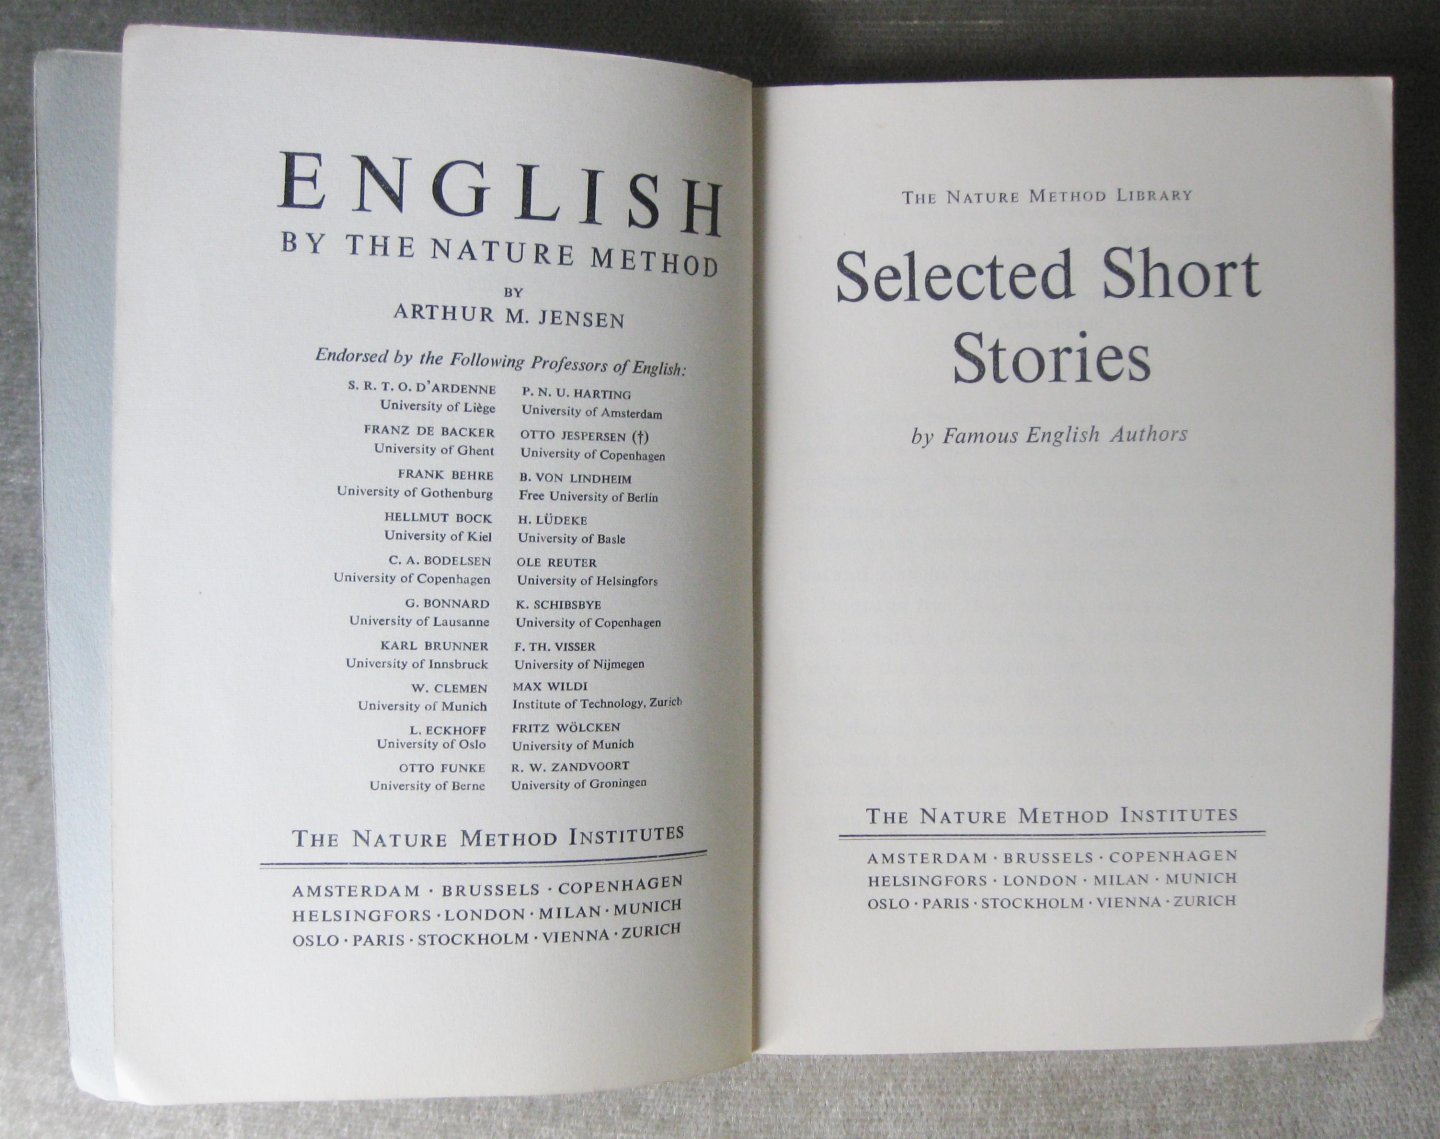 Jensen, Arthur M.   -  Famous English Authors - Selected Short Stories  -  2000 Fresh Words